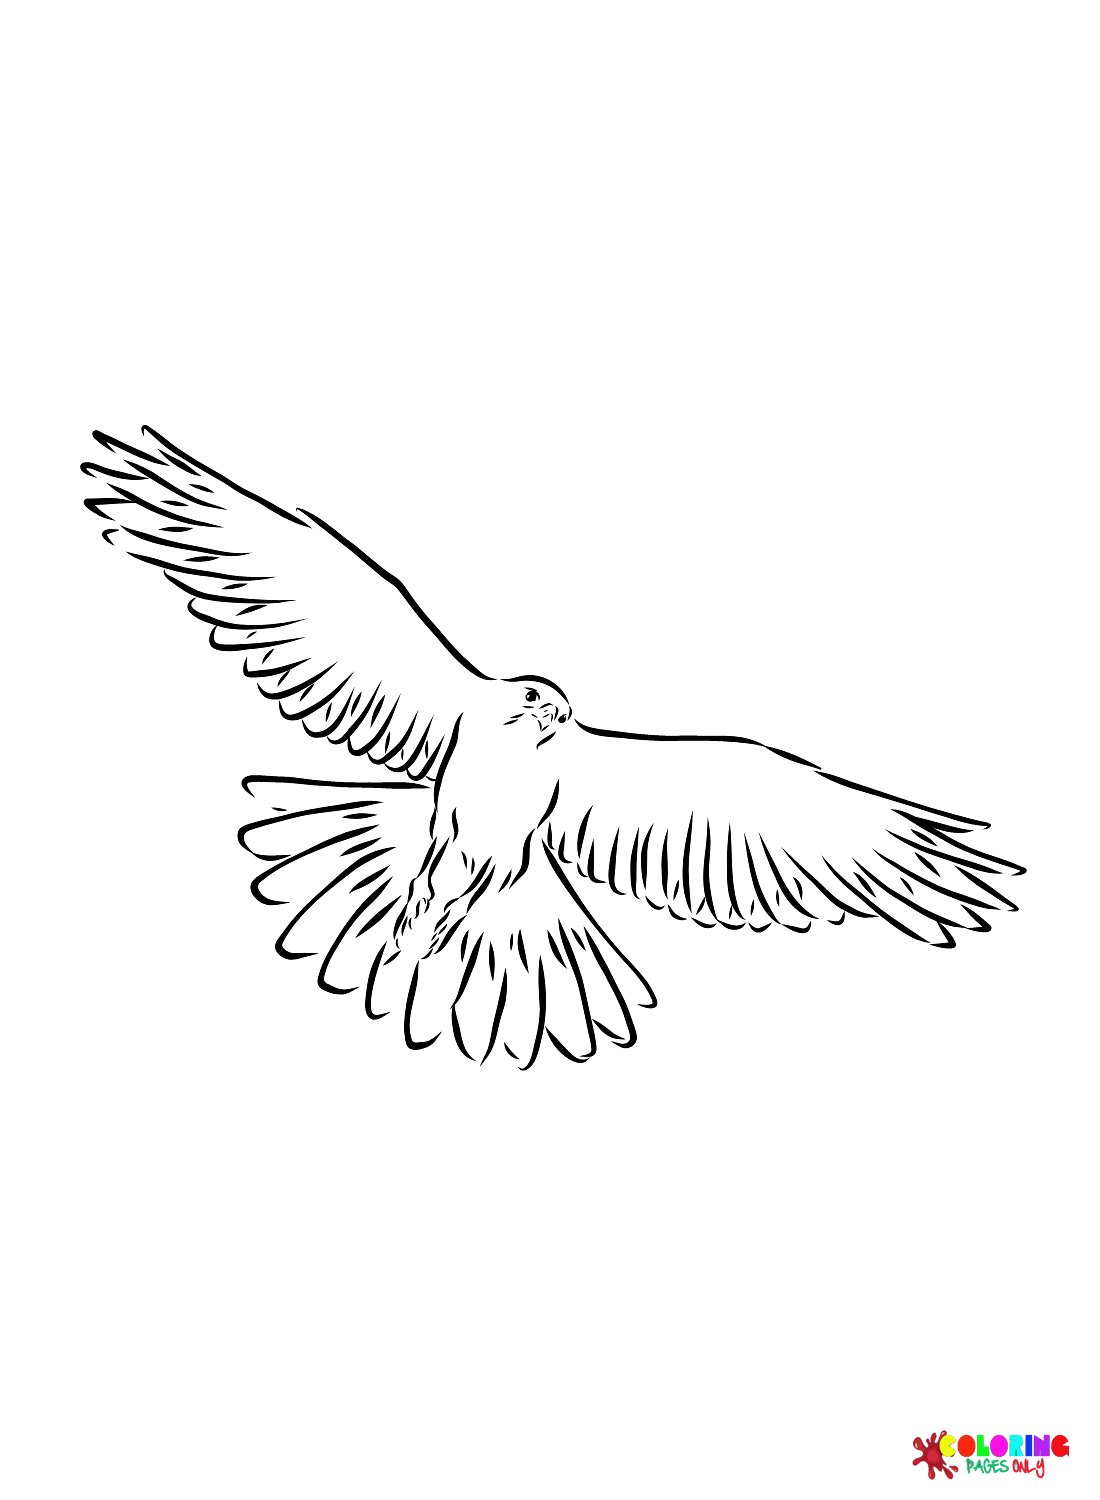 Falcon-Bilder von Falcon